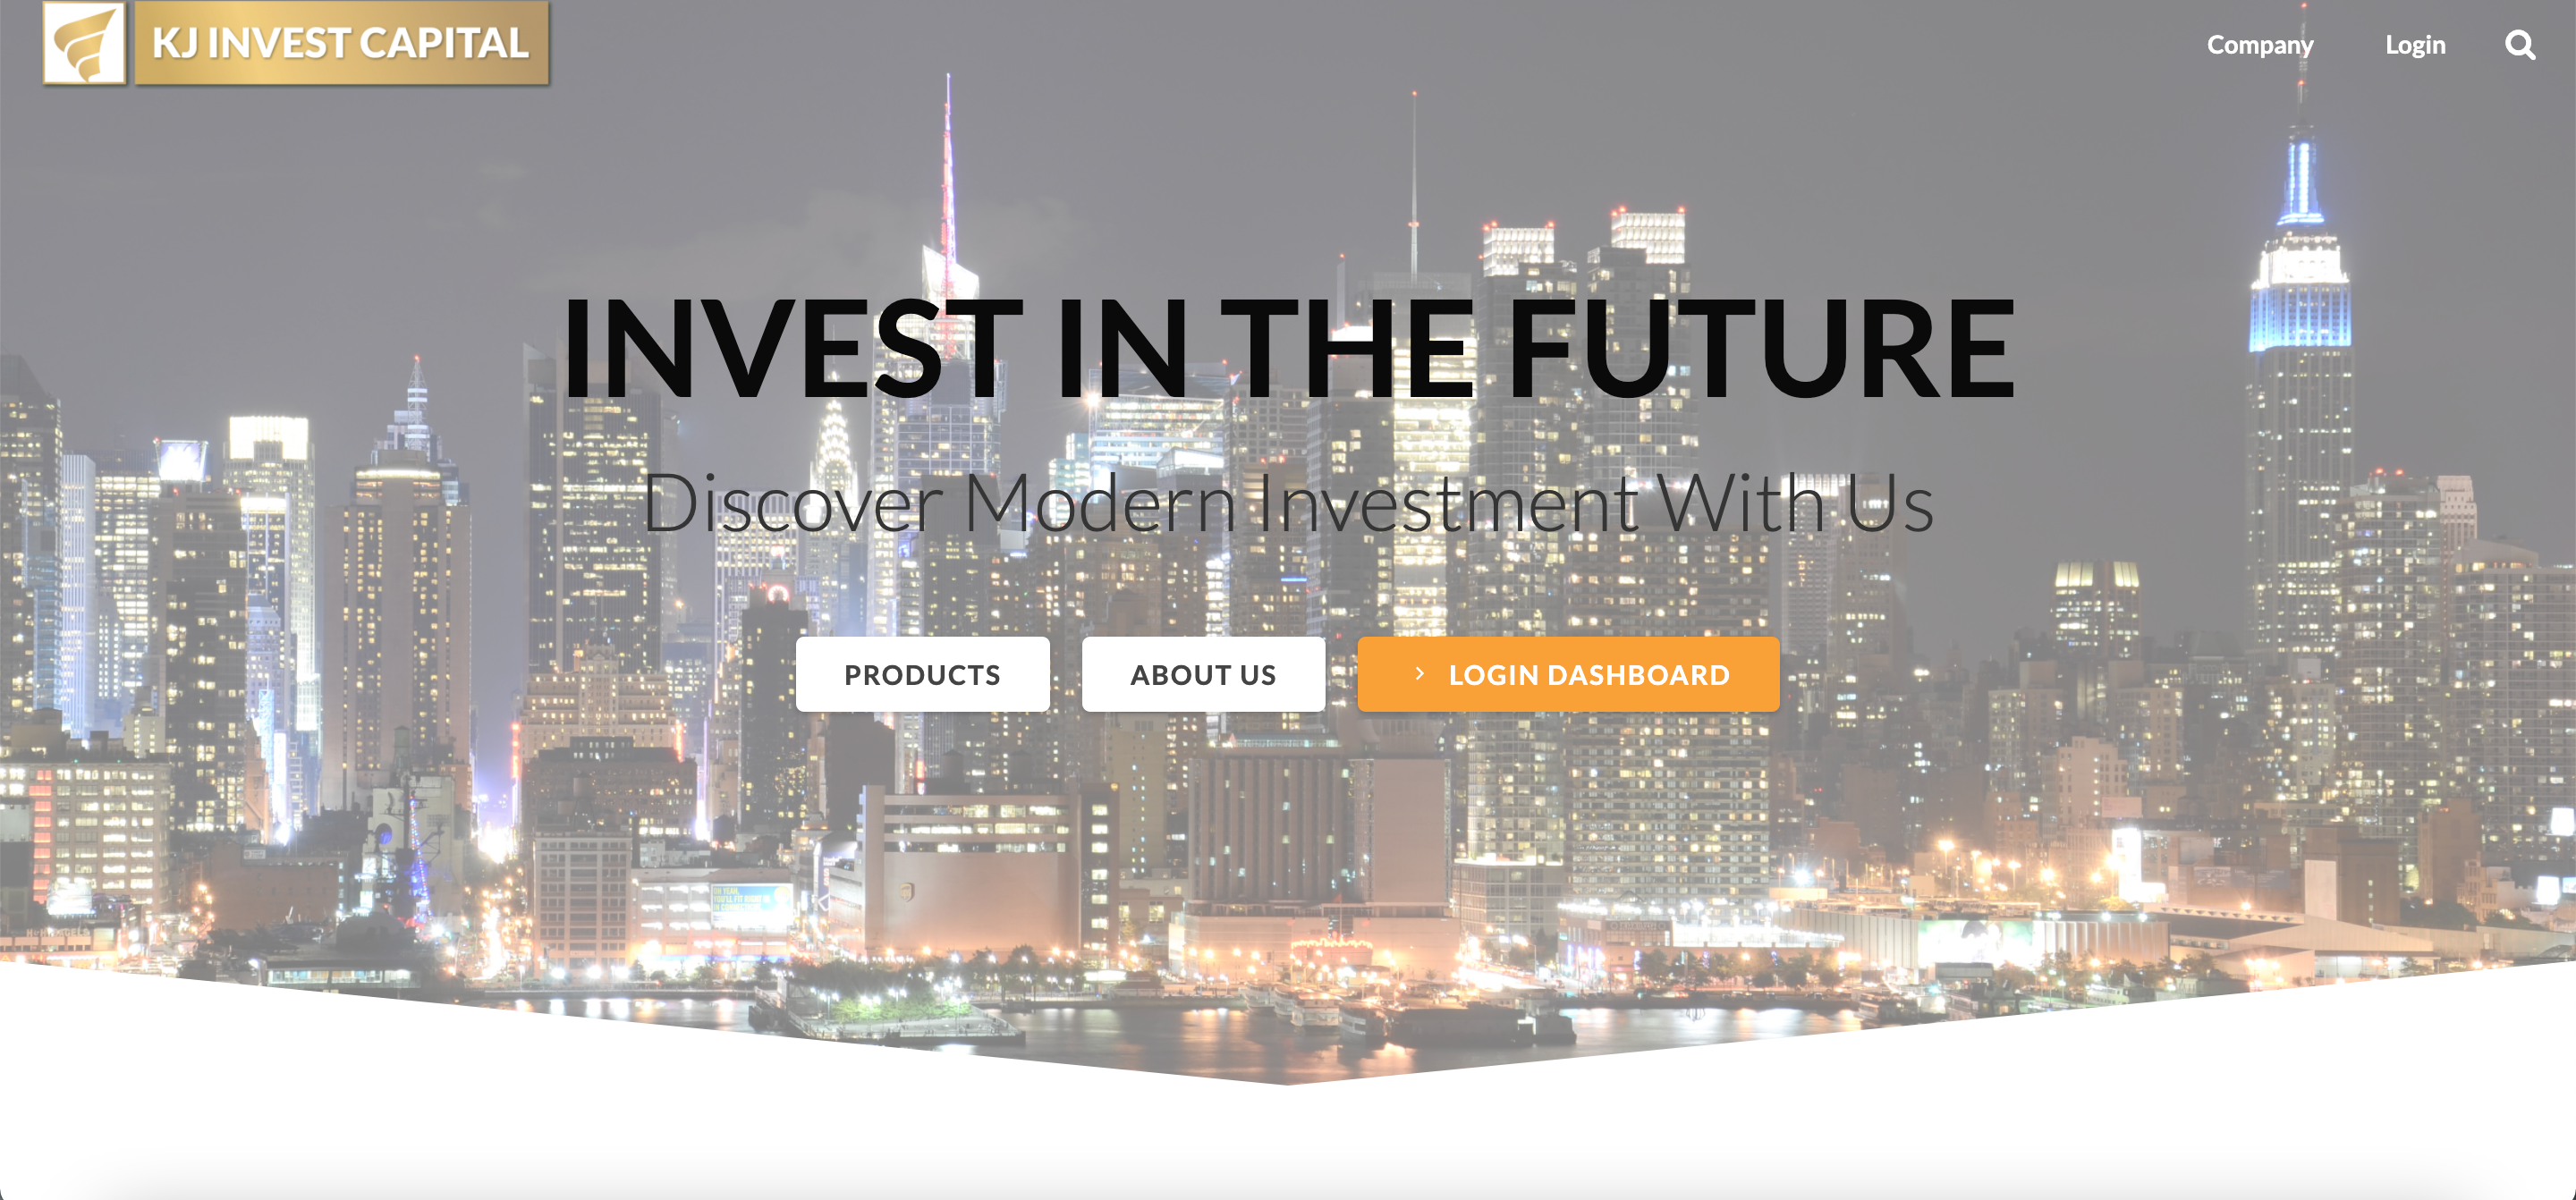 KJ Invest Capital website